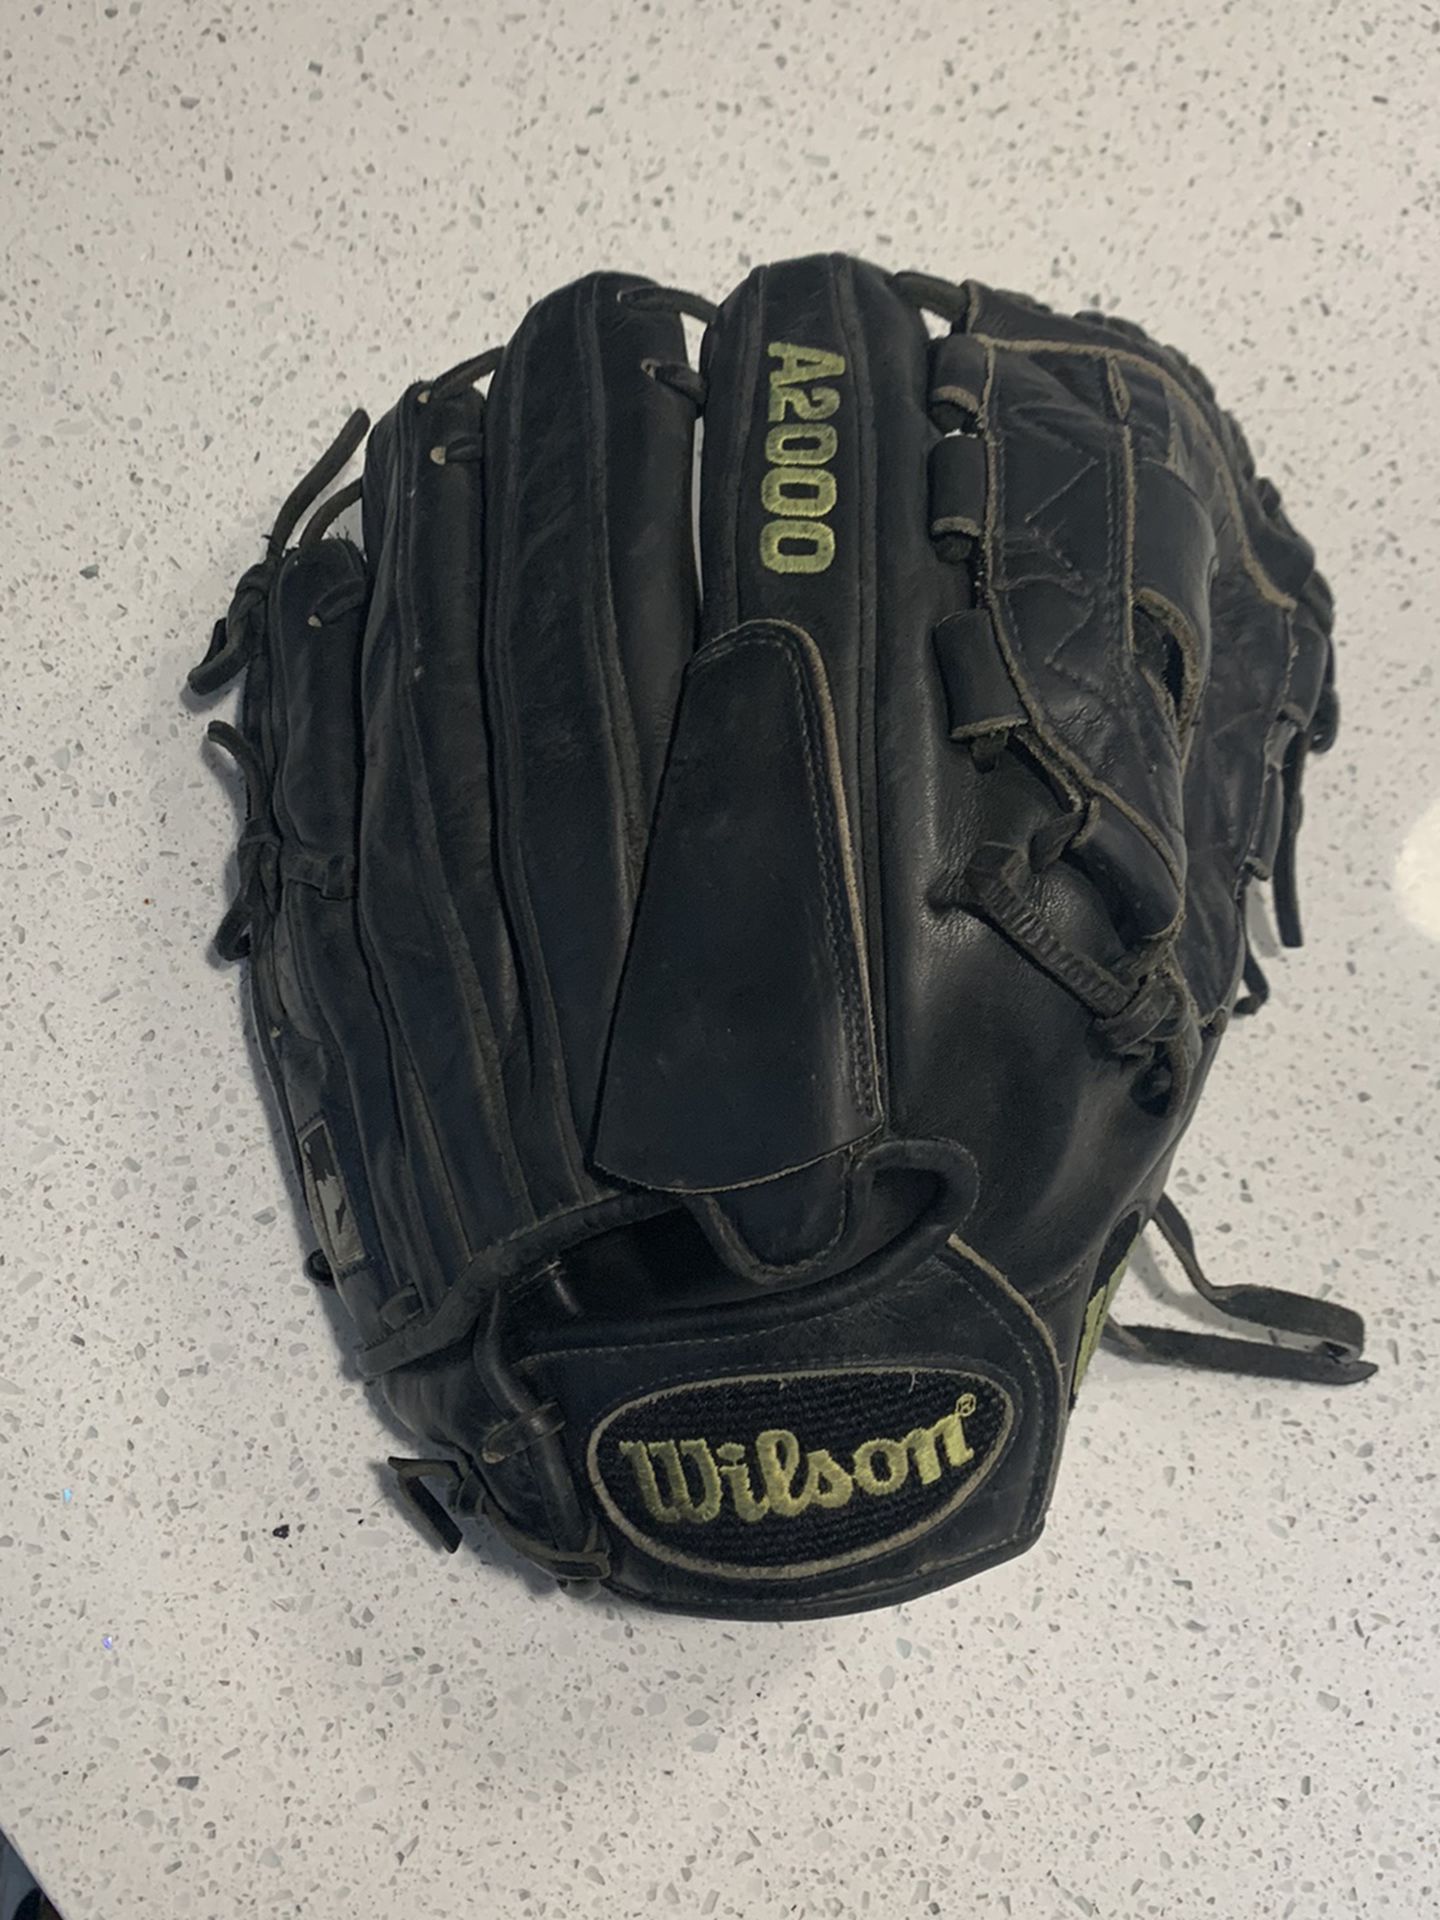 Wilson A2000 Baseball Glove $50